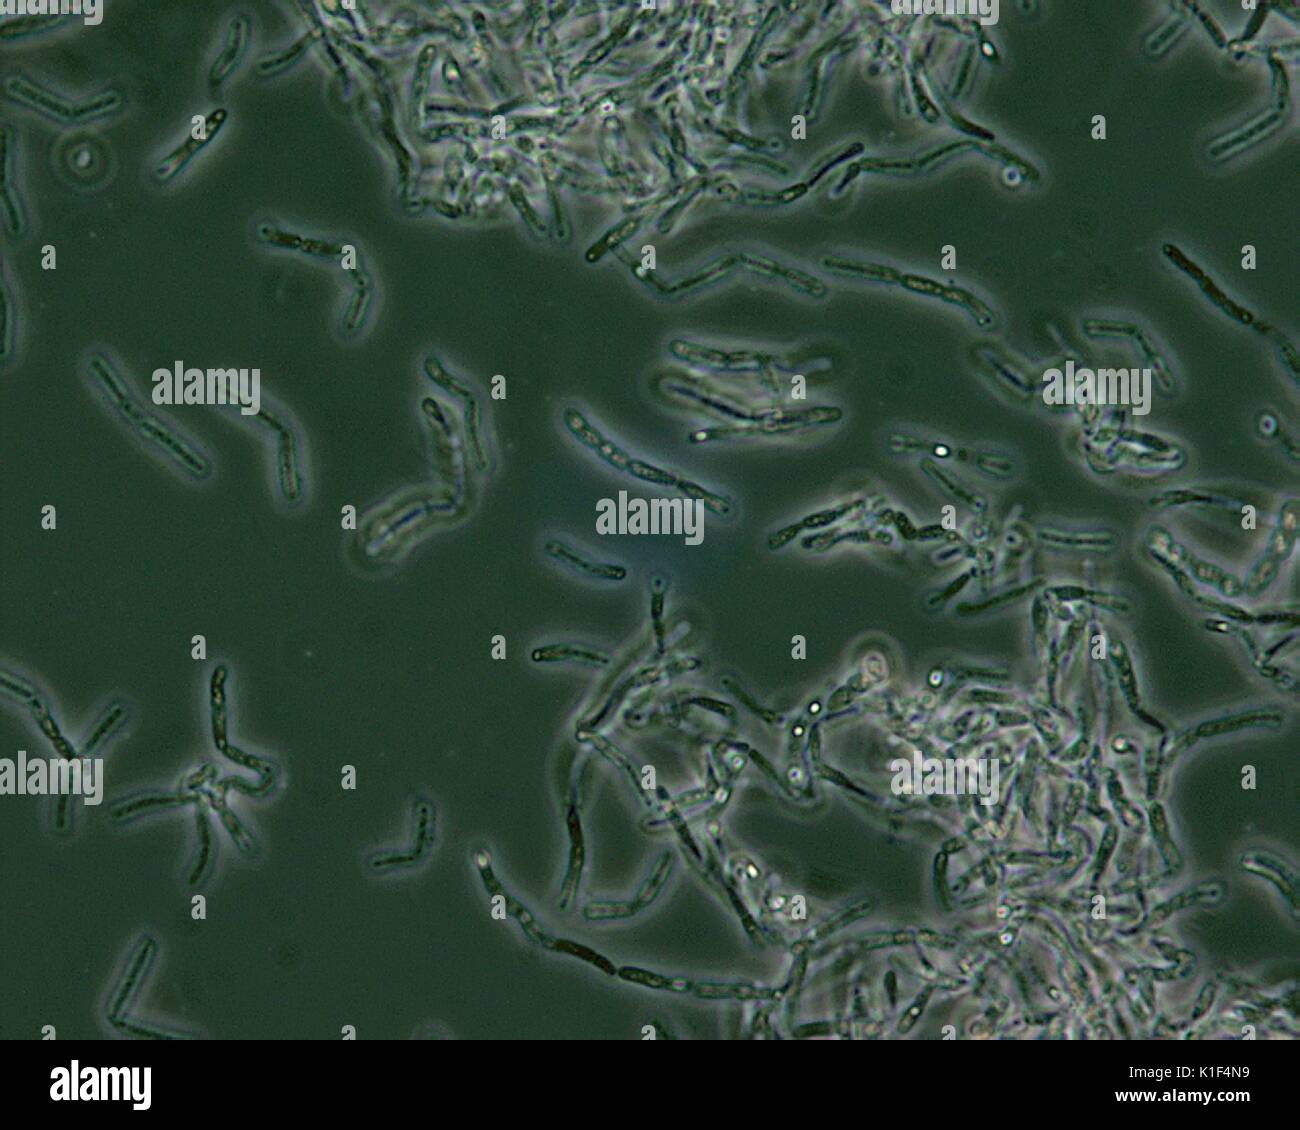 Bacillus anthracis Sporen unter Phasenkontrastmikroskopie gesehen. Bacillus anthracis endosporen sind unter Phasenkontrastmikroskopie als hellere Bereiche, Punkte, d. h. 'Licht', aufgrund der Tatsache, dass sie entwässert werden, und daher, mehr refractile gesehen. Mit freundlicher CDC/mit freundlicher Genehmigung von Larry Stauffer, Oregon State Public Health Laboratory, 2002. Stockfoto